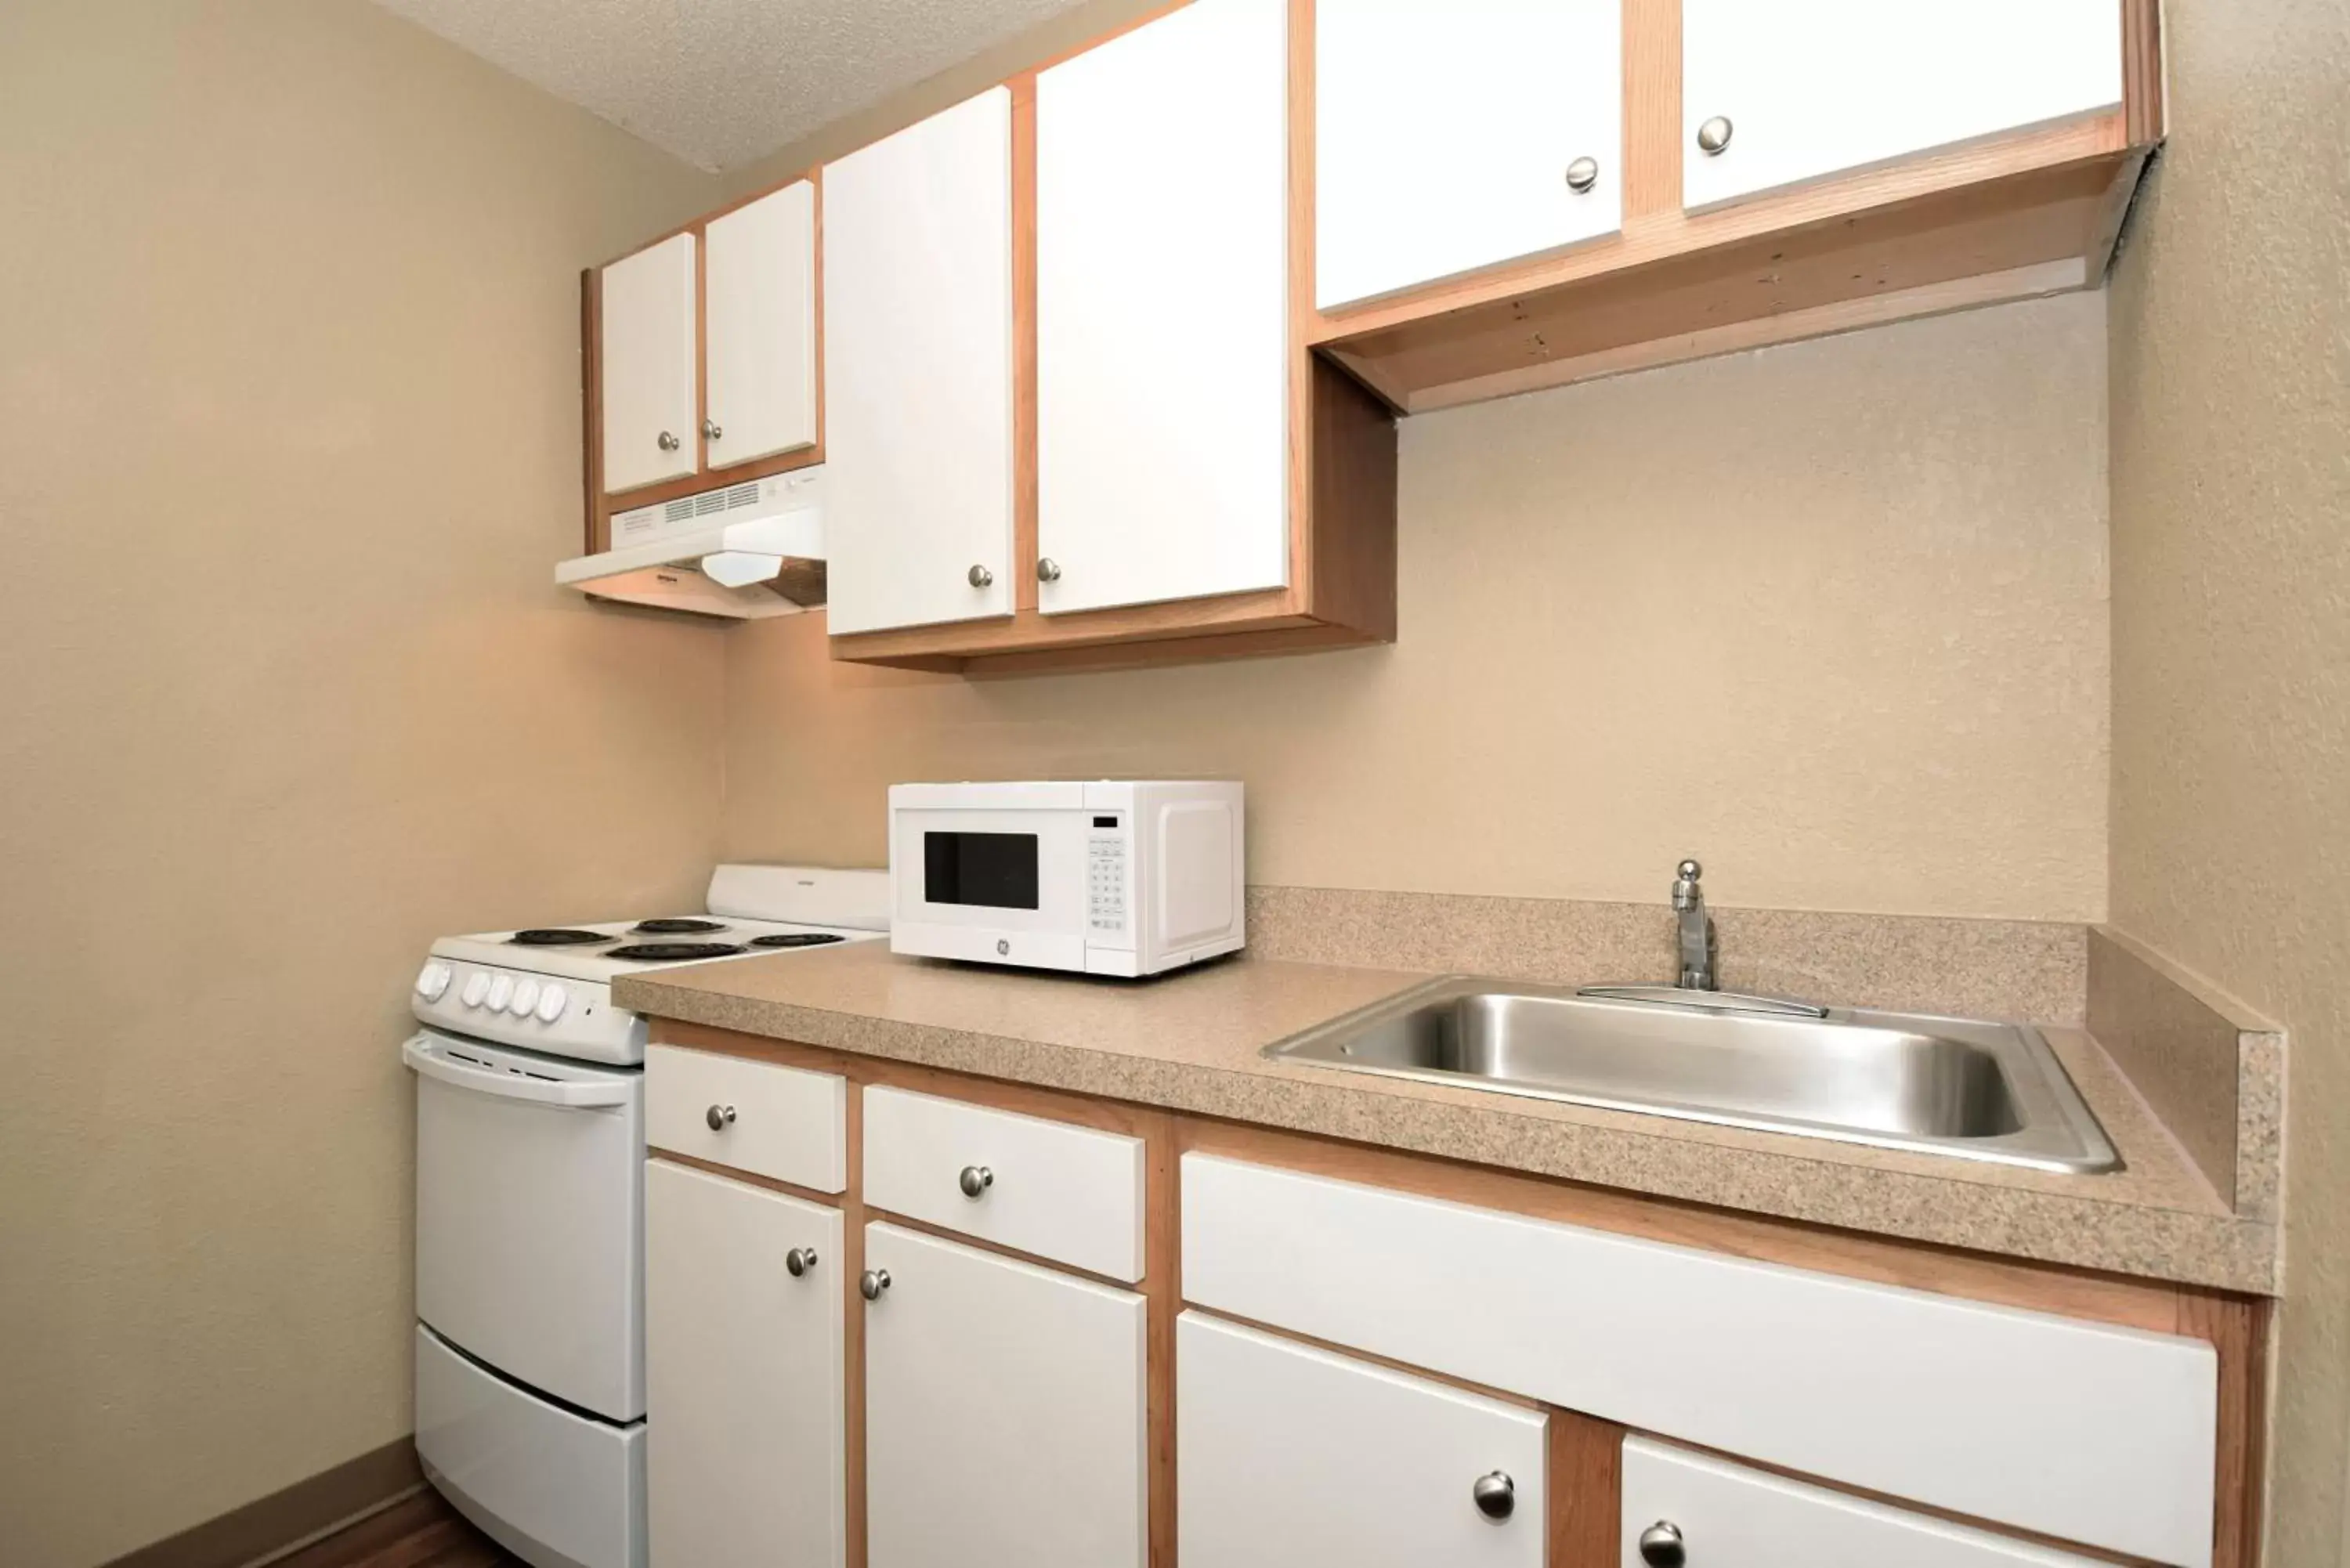 Kitchen or kitchenette, Kitchen/Kitchenette in Extended Stay America Suites - San Antonio - Colonnade - Medical